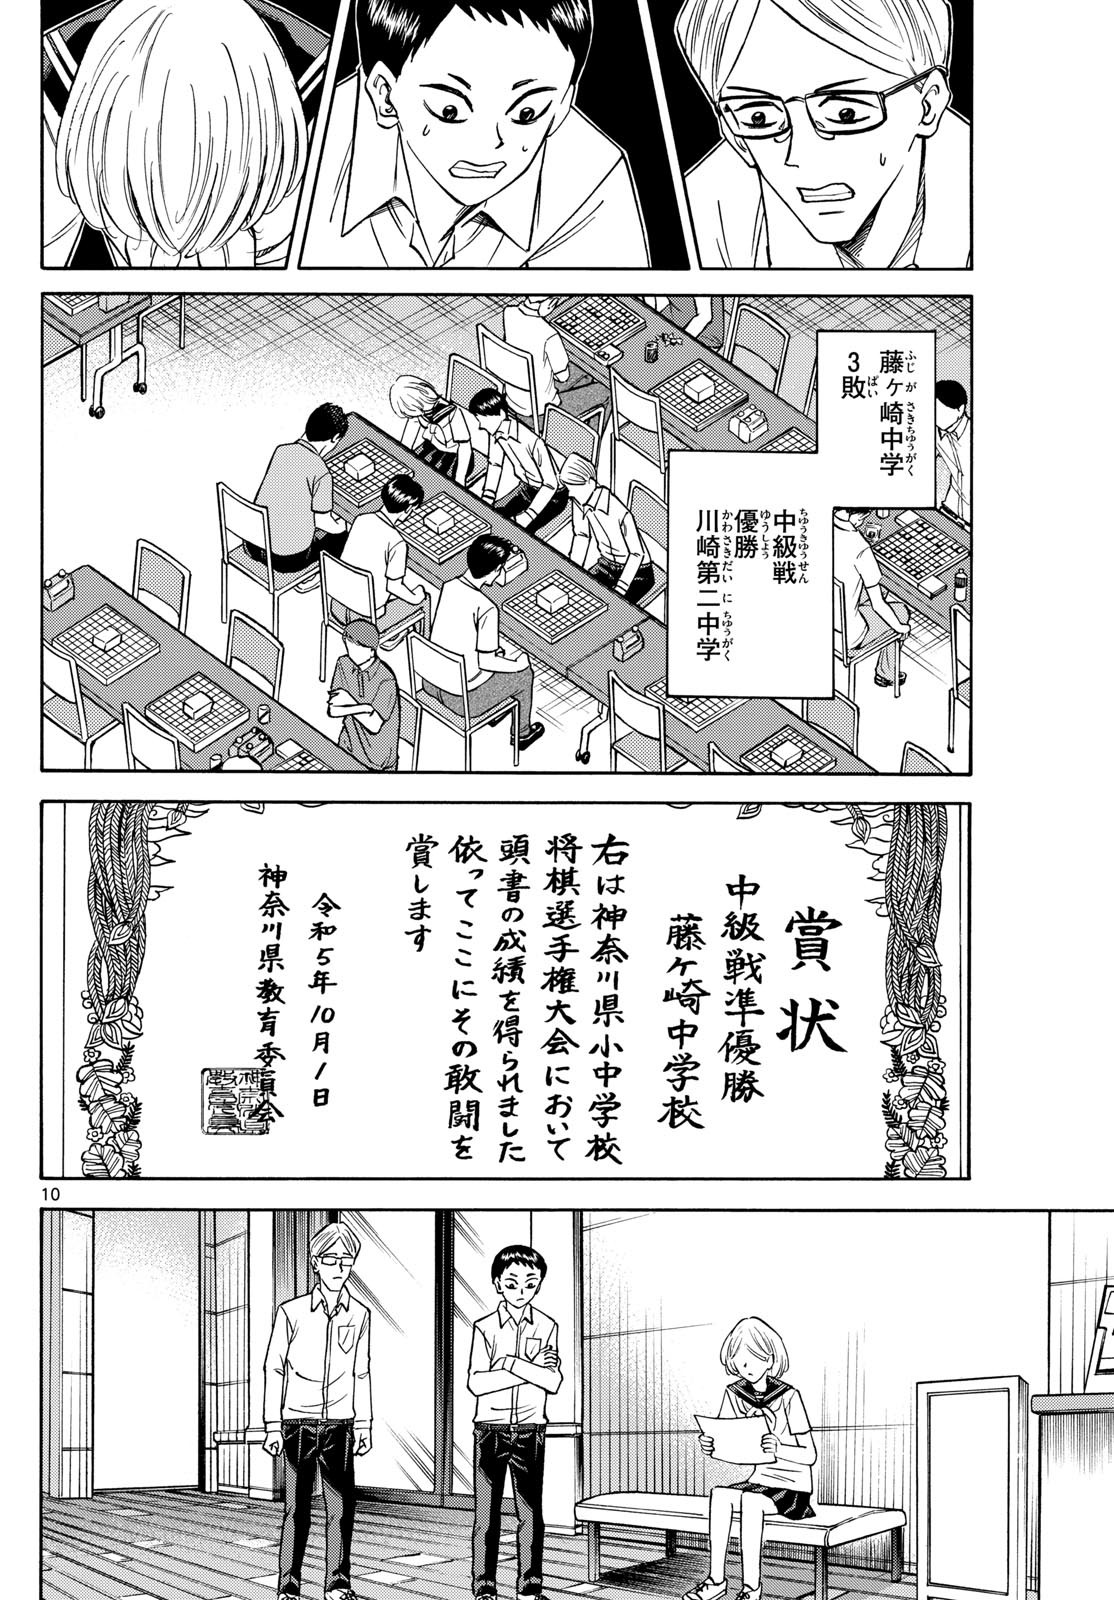 Ryu-to-Ichigo - Chapter 152 - Page 10